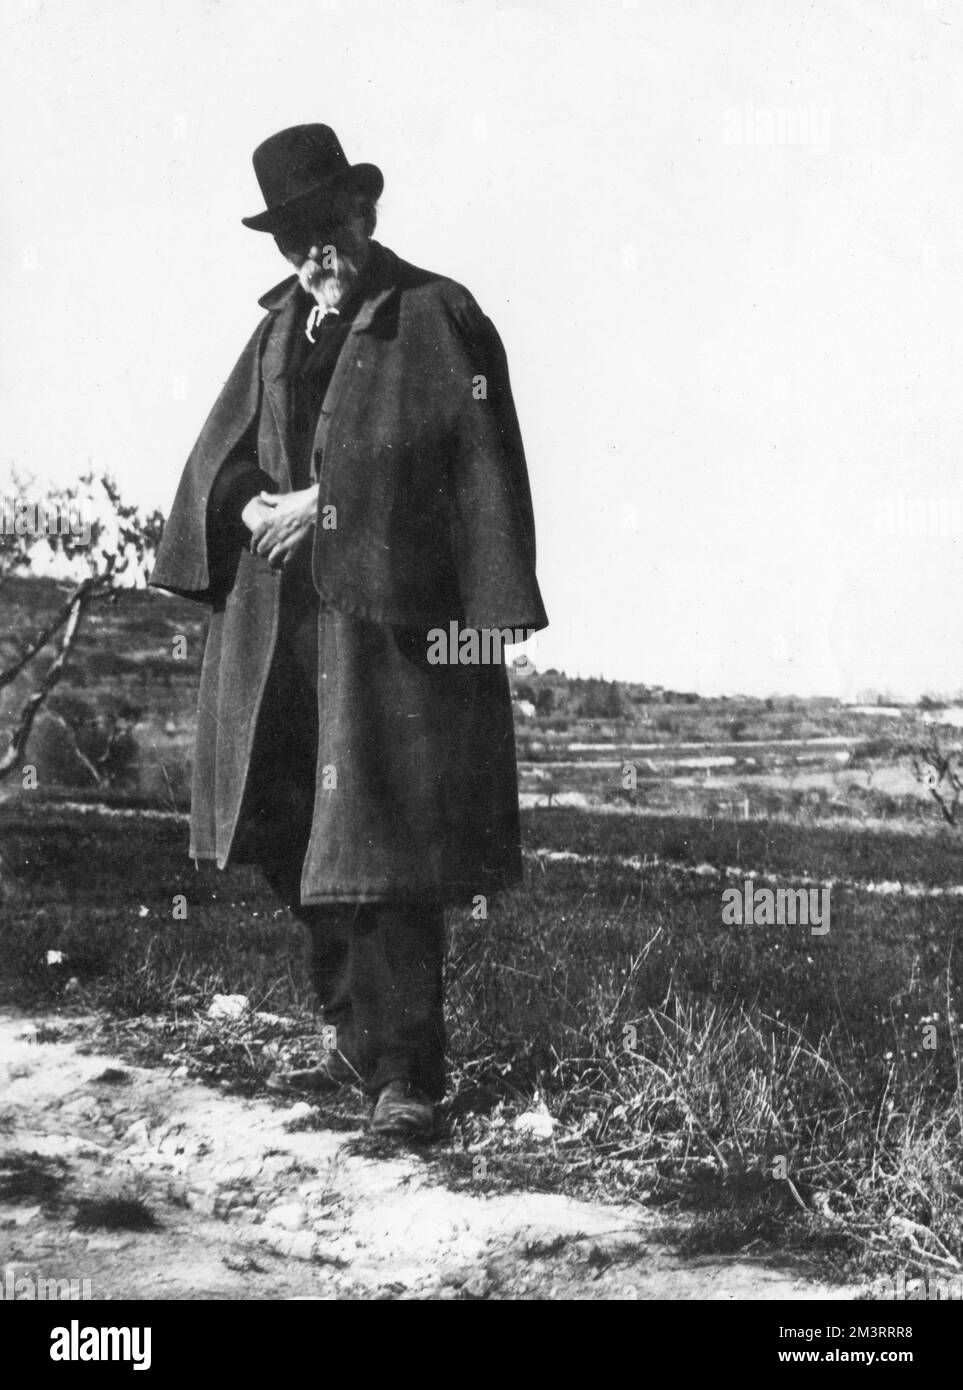 Paul Cezanne (1839-1906) artista francese, fotografato nella sua città natale di Aix-en-Provence nel 1904. Data: 1904 Foto Stock